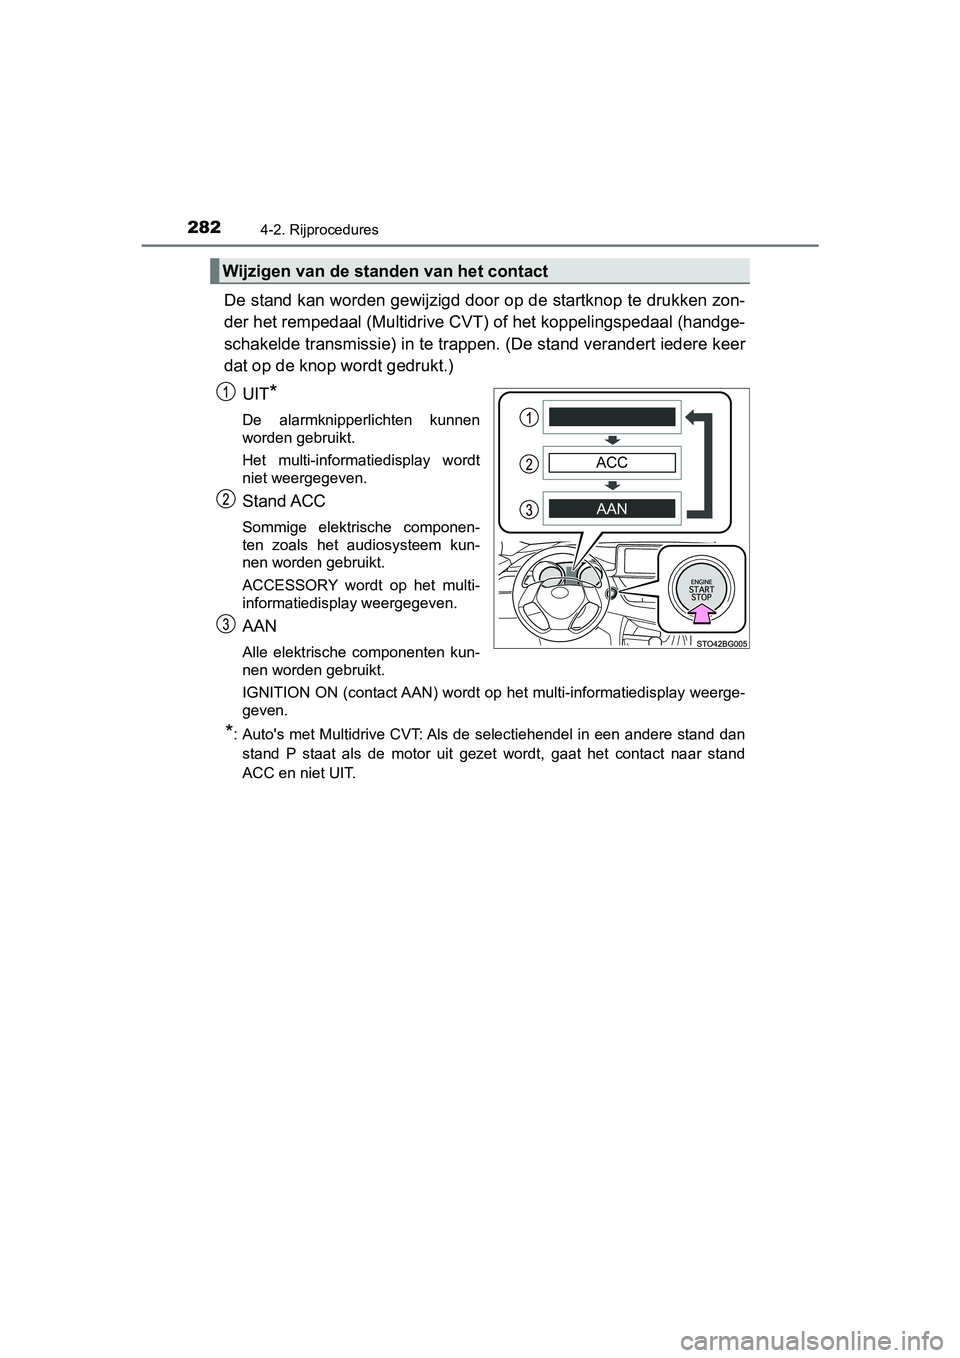 TOYOTA C-HR 2018  Instructieboekje (in Dutch) 2824-2. Rijprocedures
C-HR_OM_Europe_OM10571E
De stand kan worden gewijzigd door op de startknop te drukken zon-
der het rempedaal (Multidrive CVT ) of het koppelingspedaal (handge-
schakelde transmis